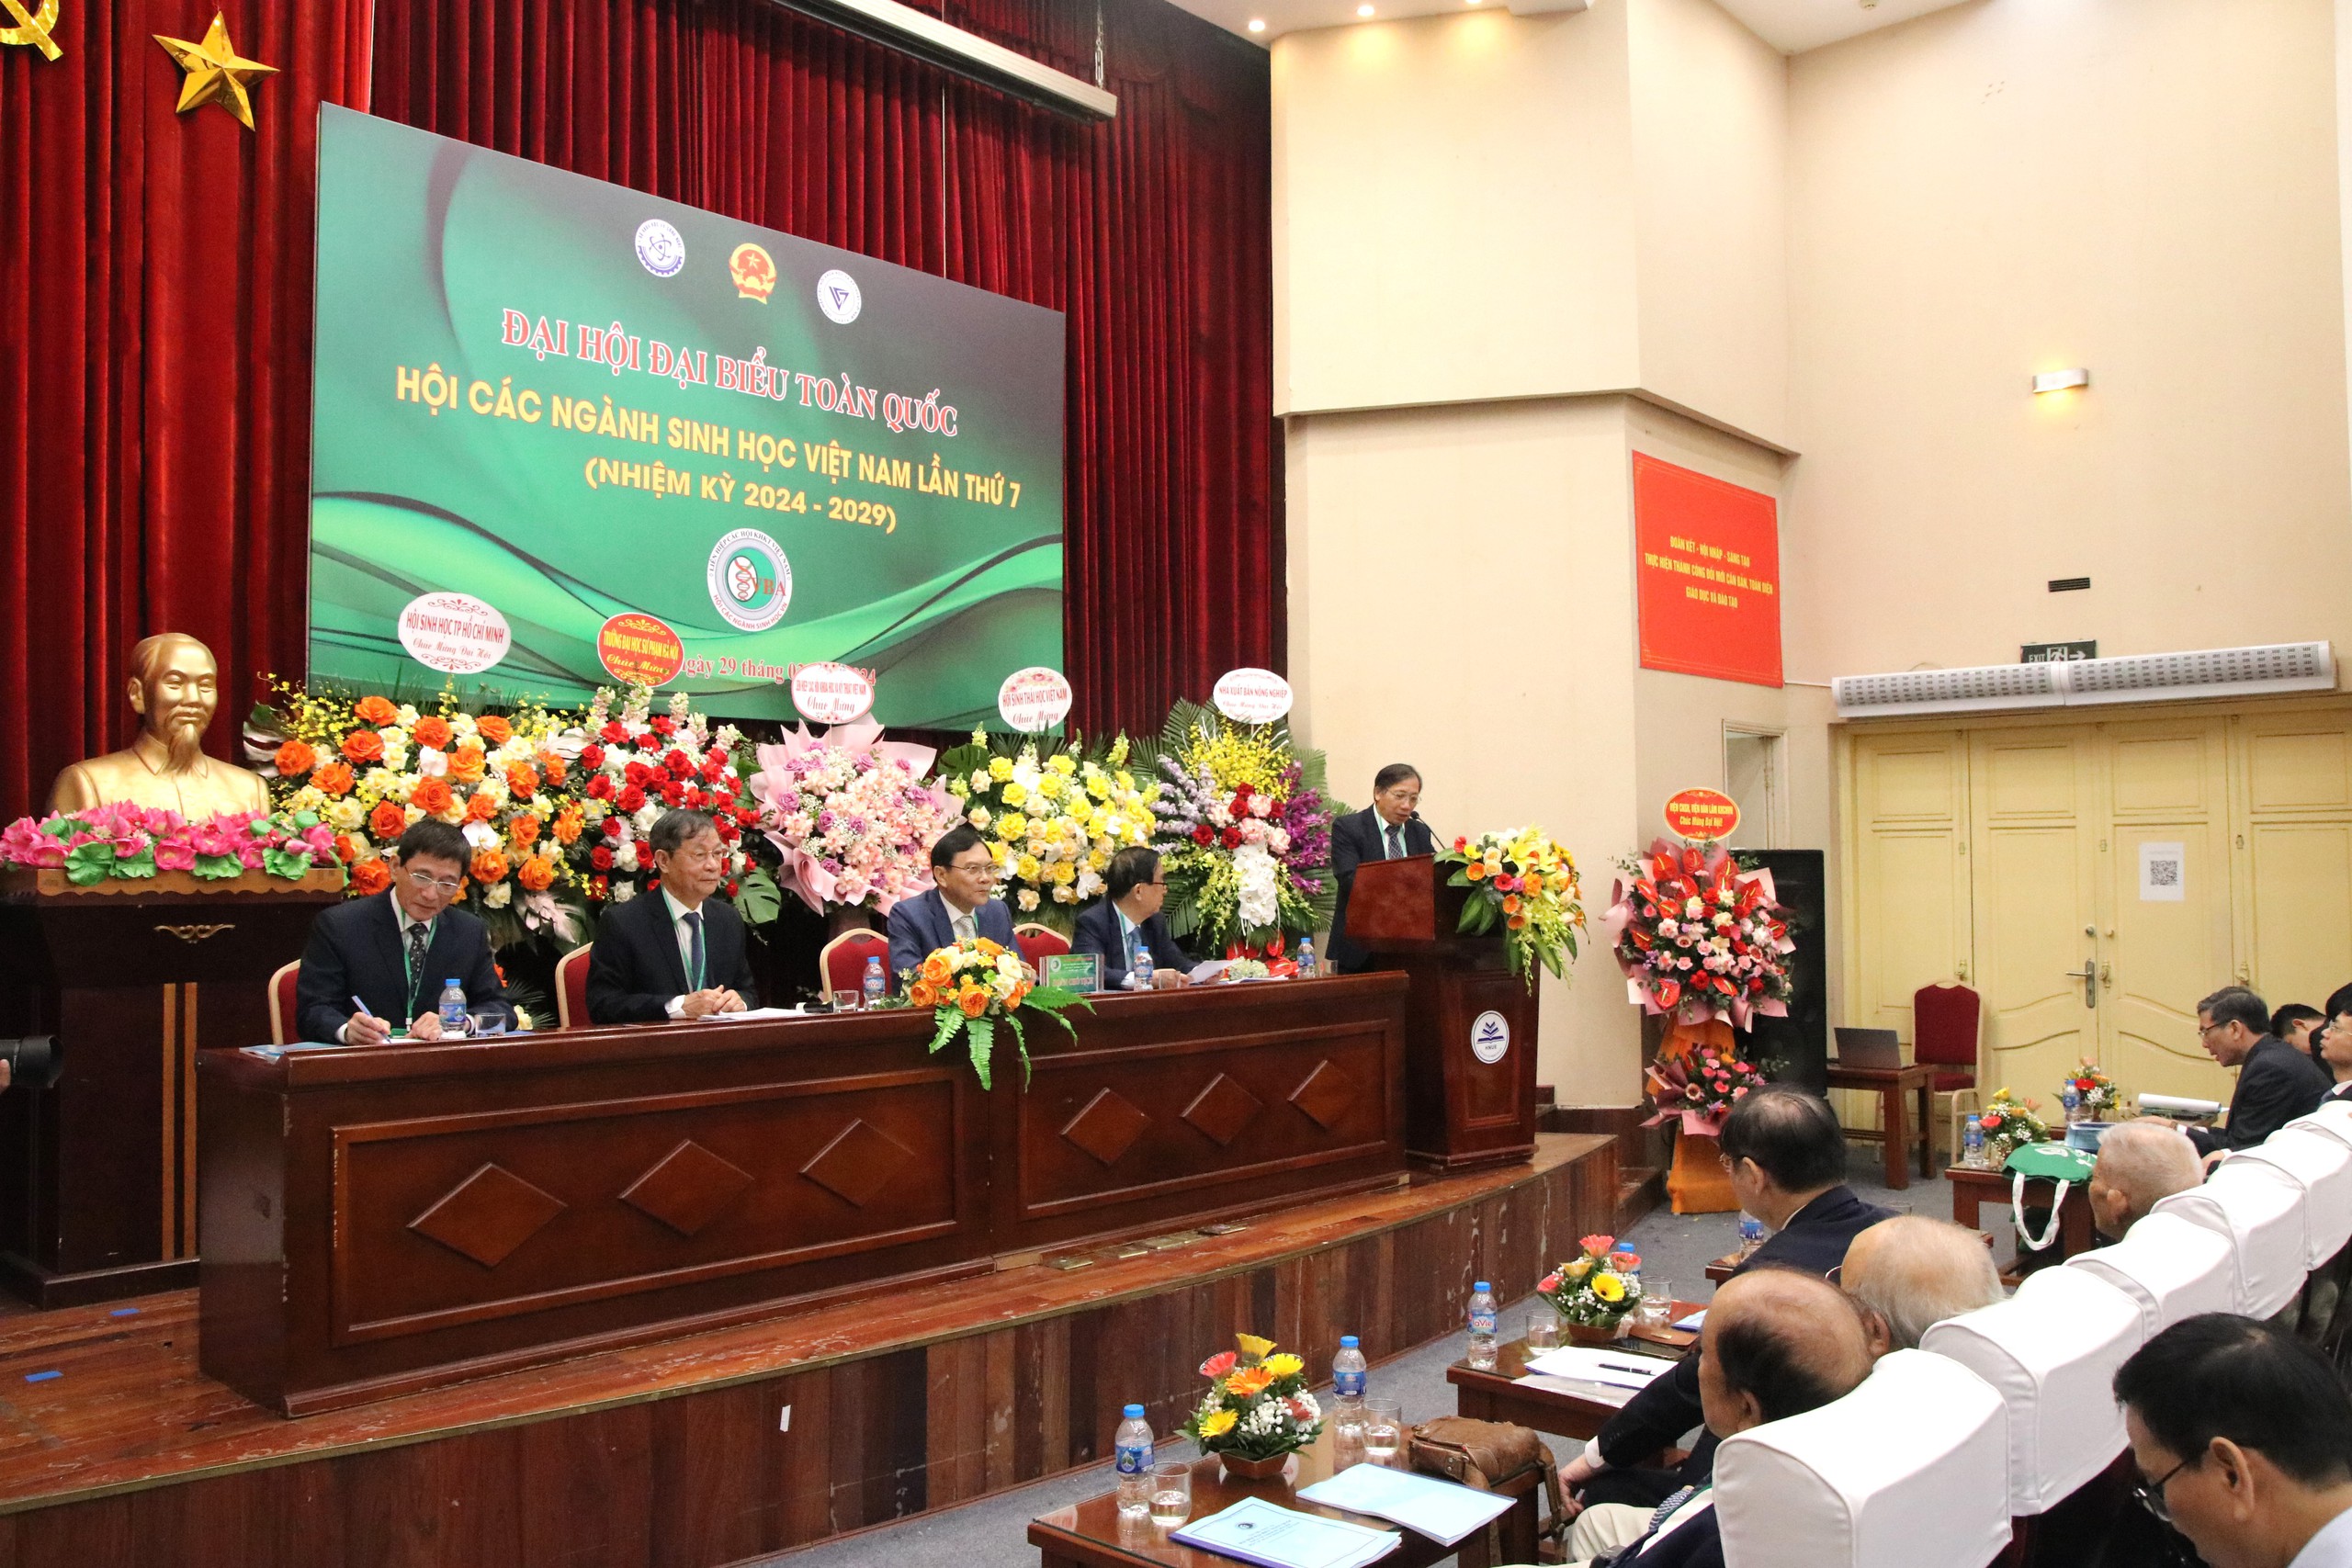 Đại hội Hội các ngành Sinh học Việt Nam lần thứ VII (nhiệm kỳ 2024- 2029): GS.TS Lê Trần Bình tái cử Chủ tịch Hội- Ảnh 2.